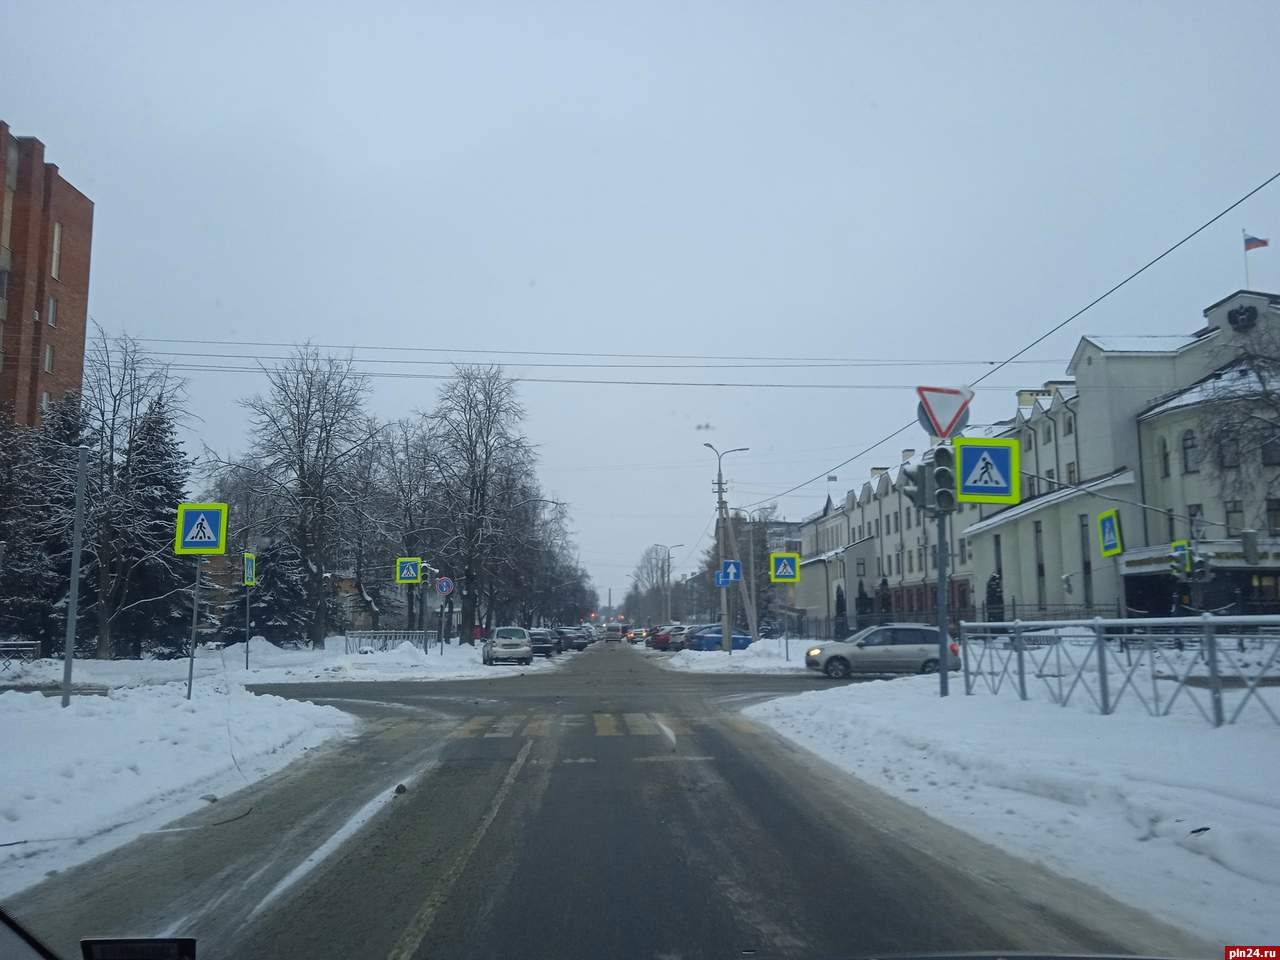 Светофор на перекрестке Петровская - Люксембург в Пскове починят не позднее пятницы